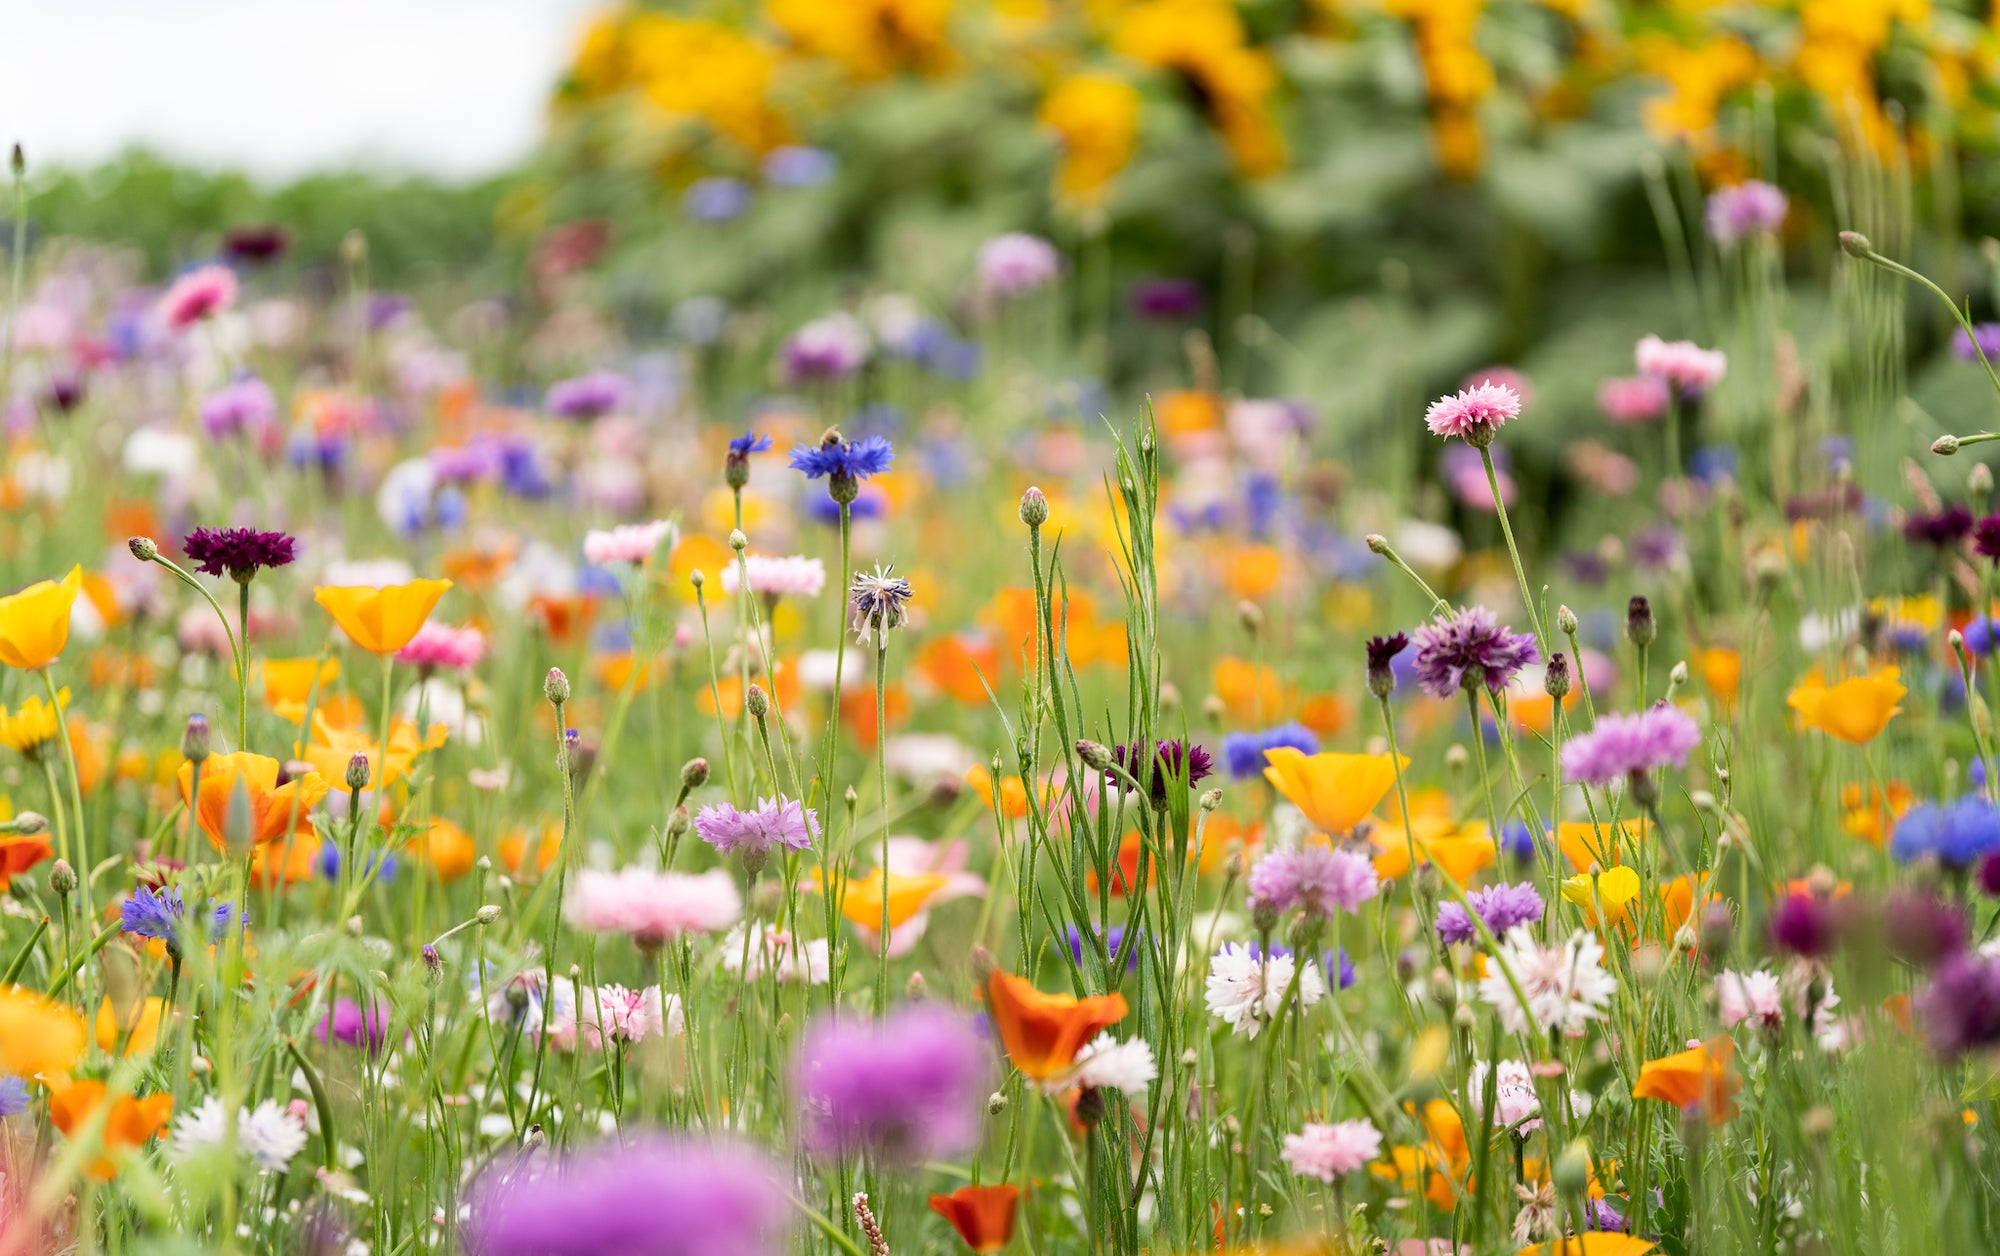 Edible Flowers - Grangetto's Farm & Garden Supply